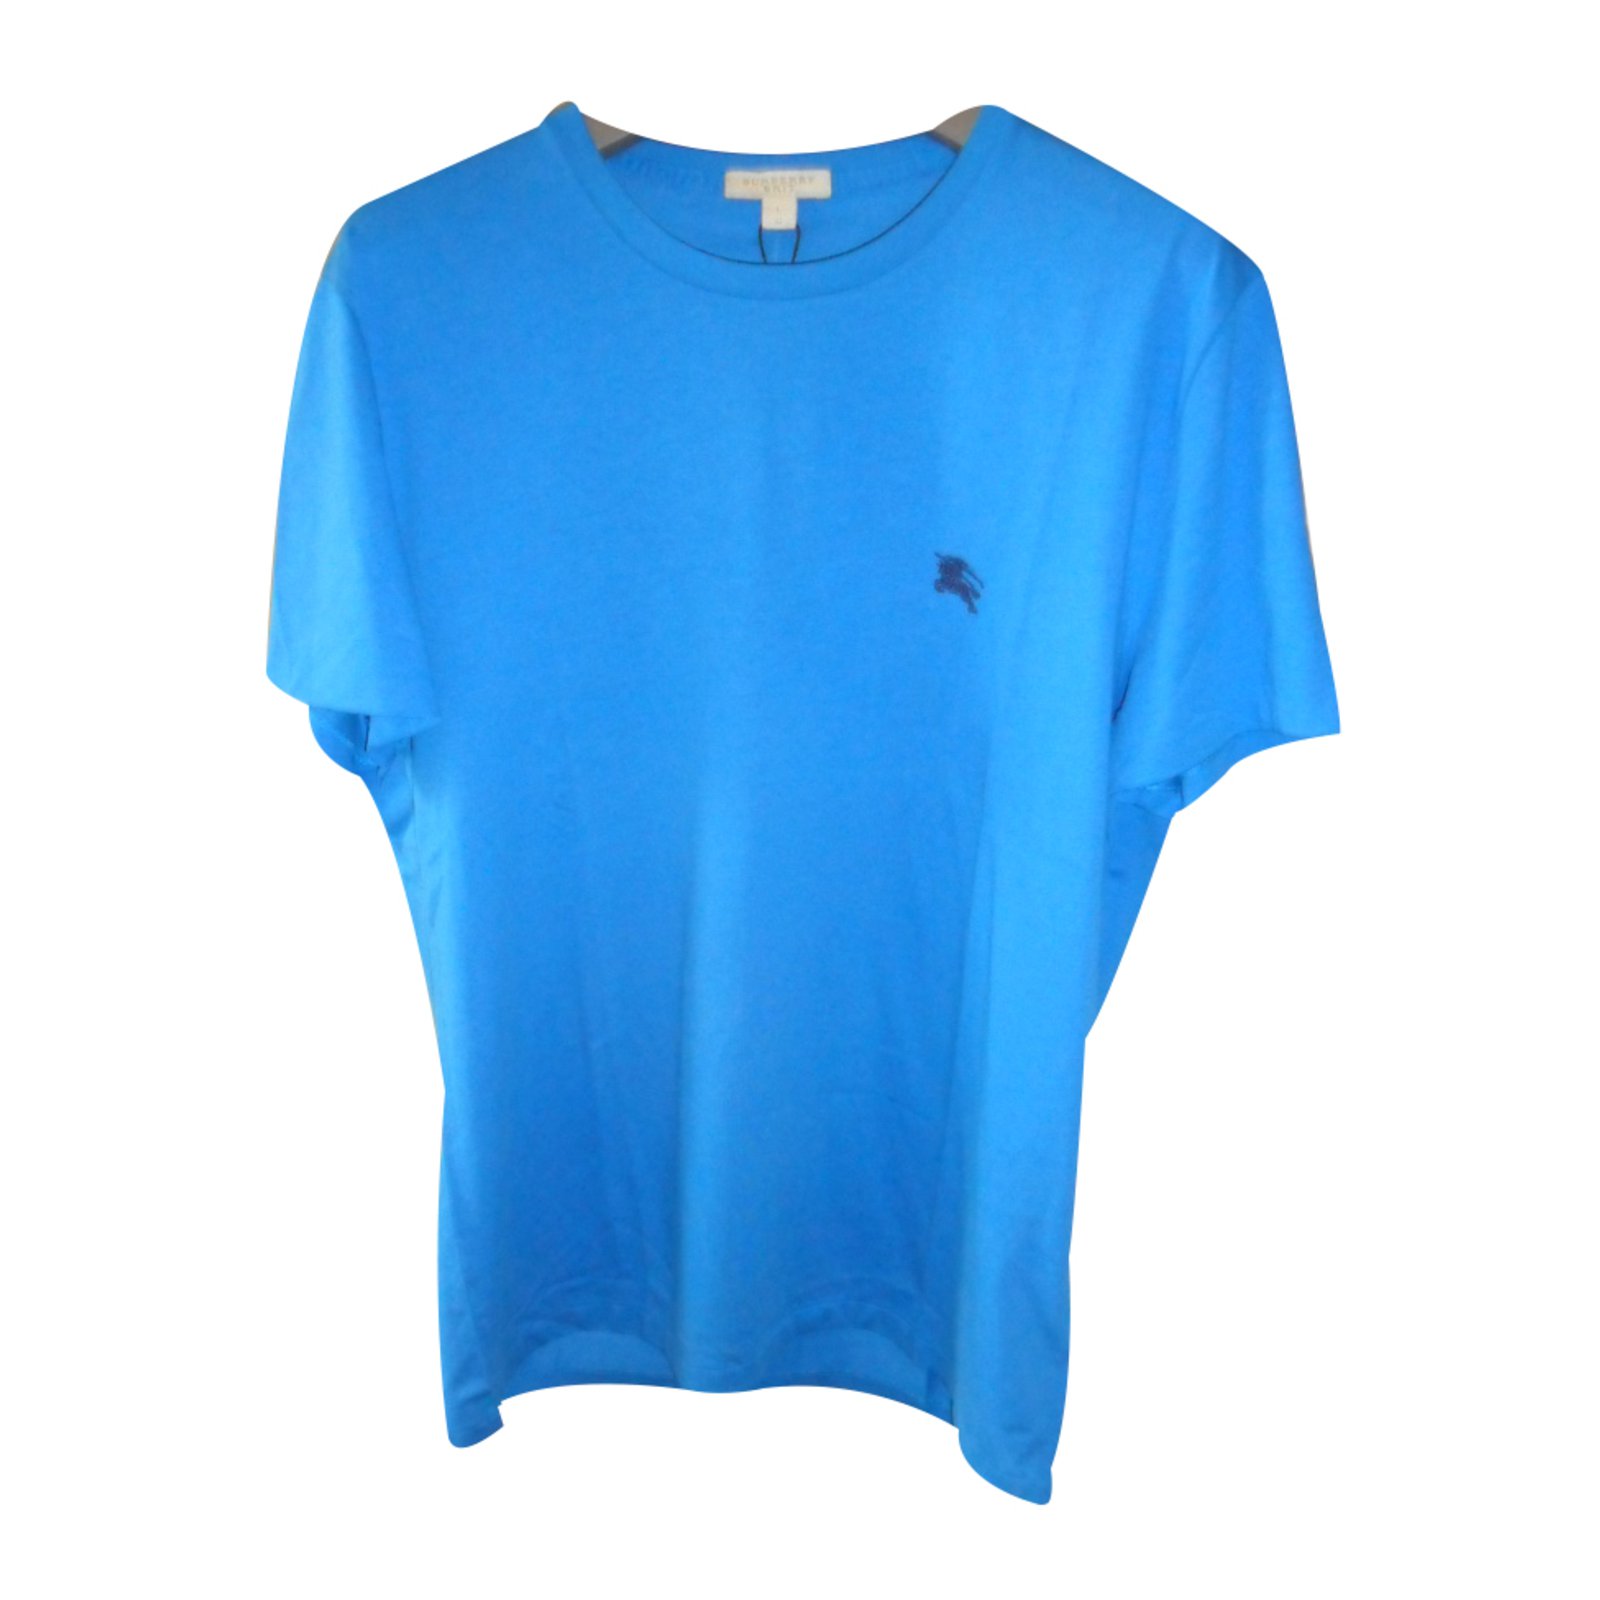 blue burberry shirt mens